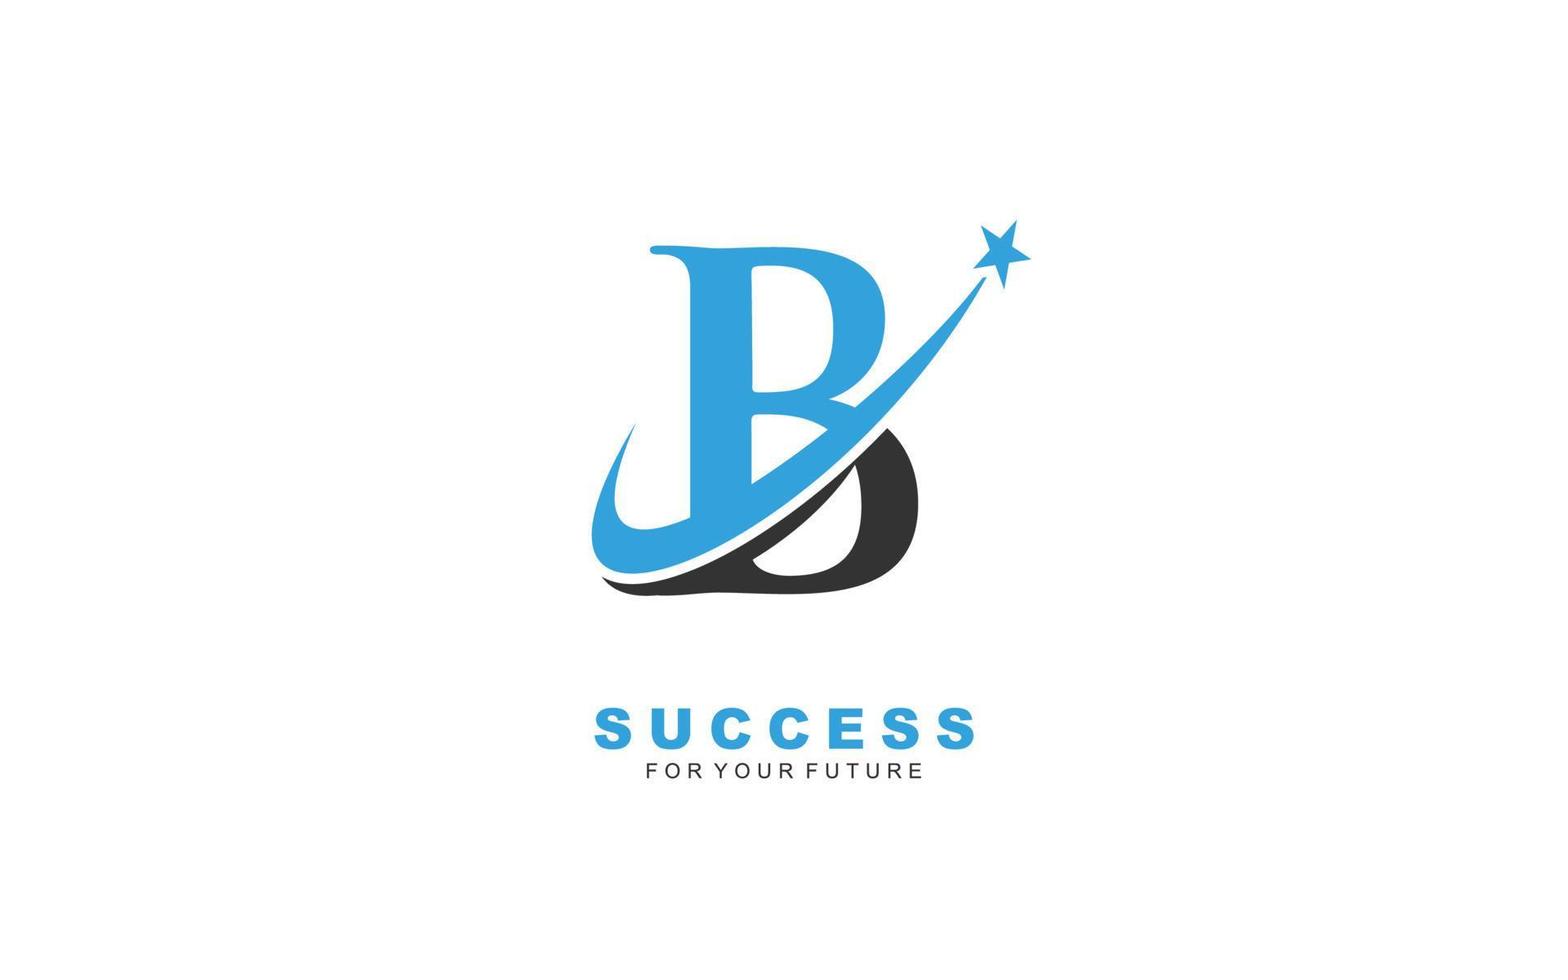 B logo star for branding company. letter template vector illustration for your brand.